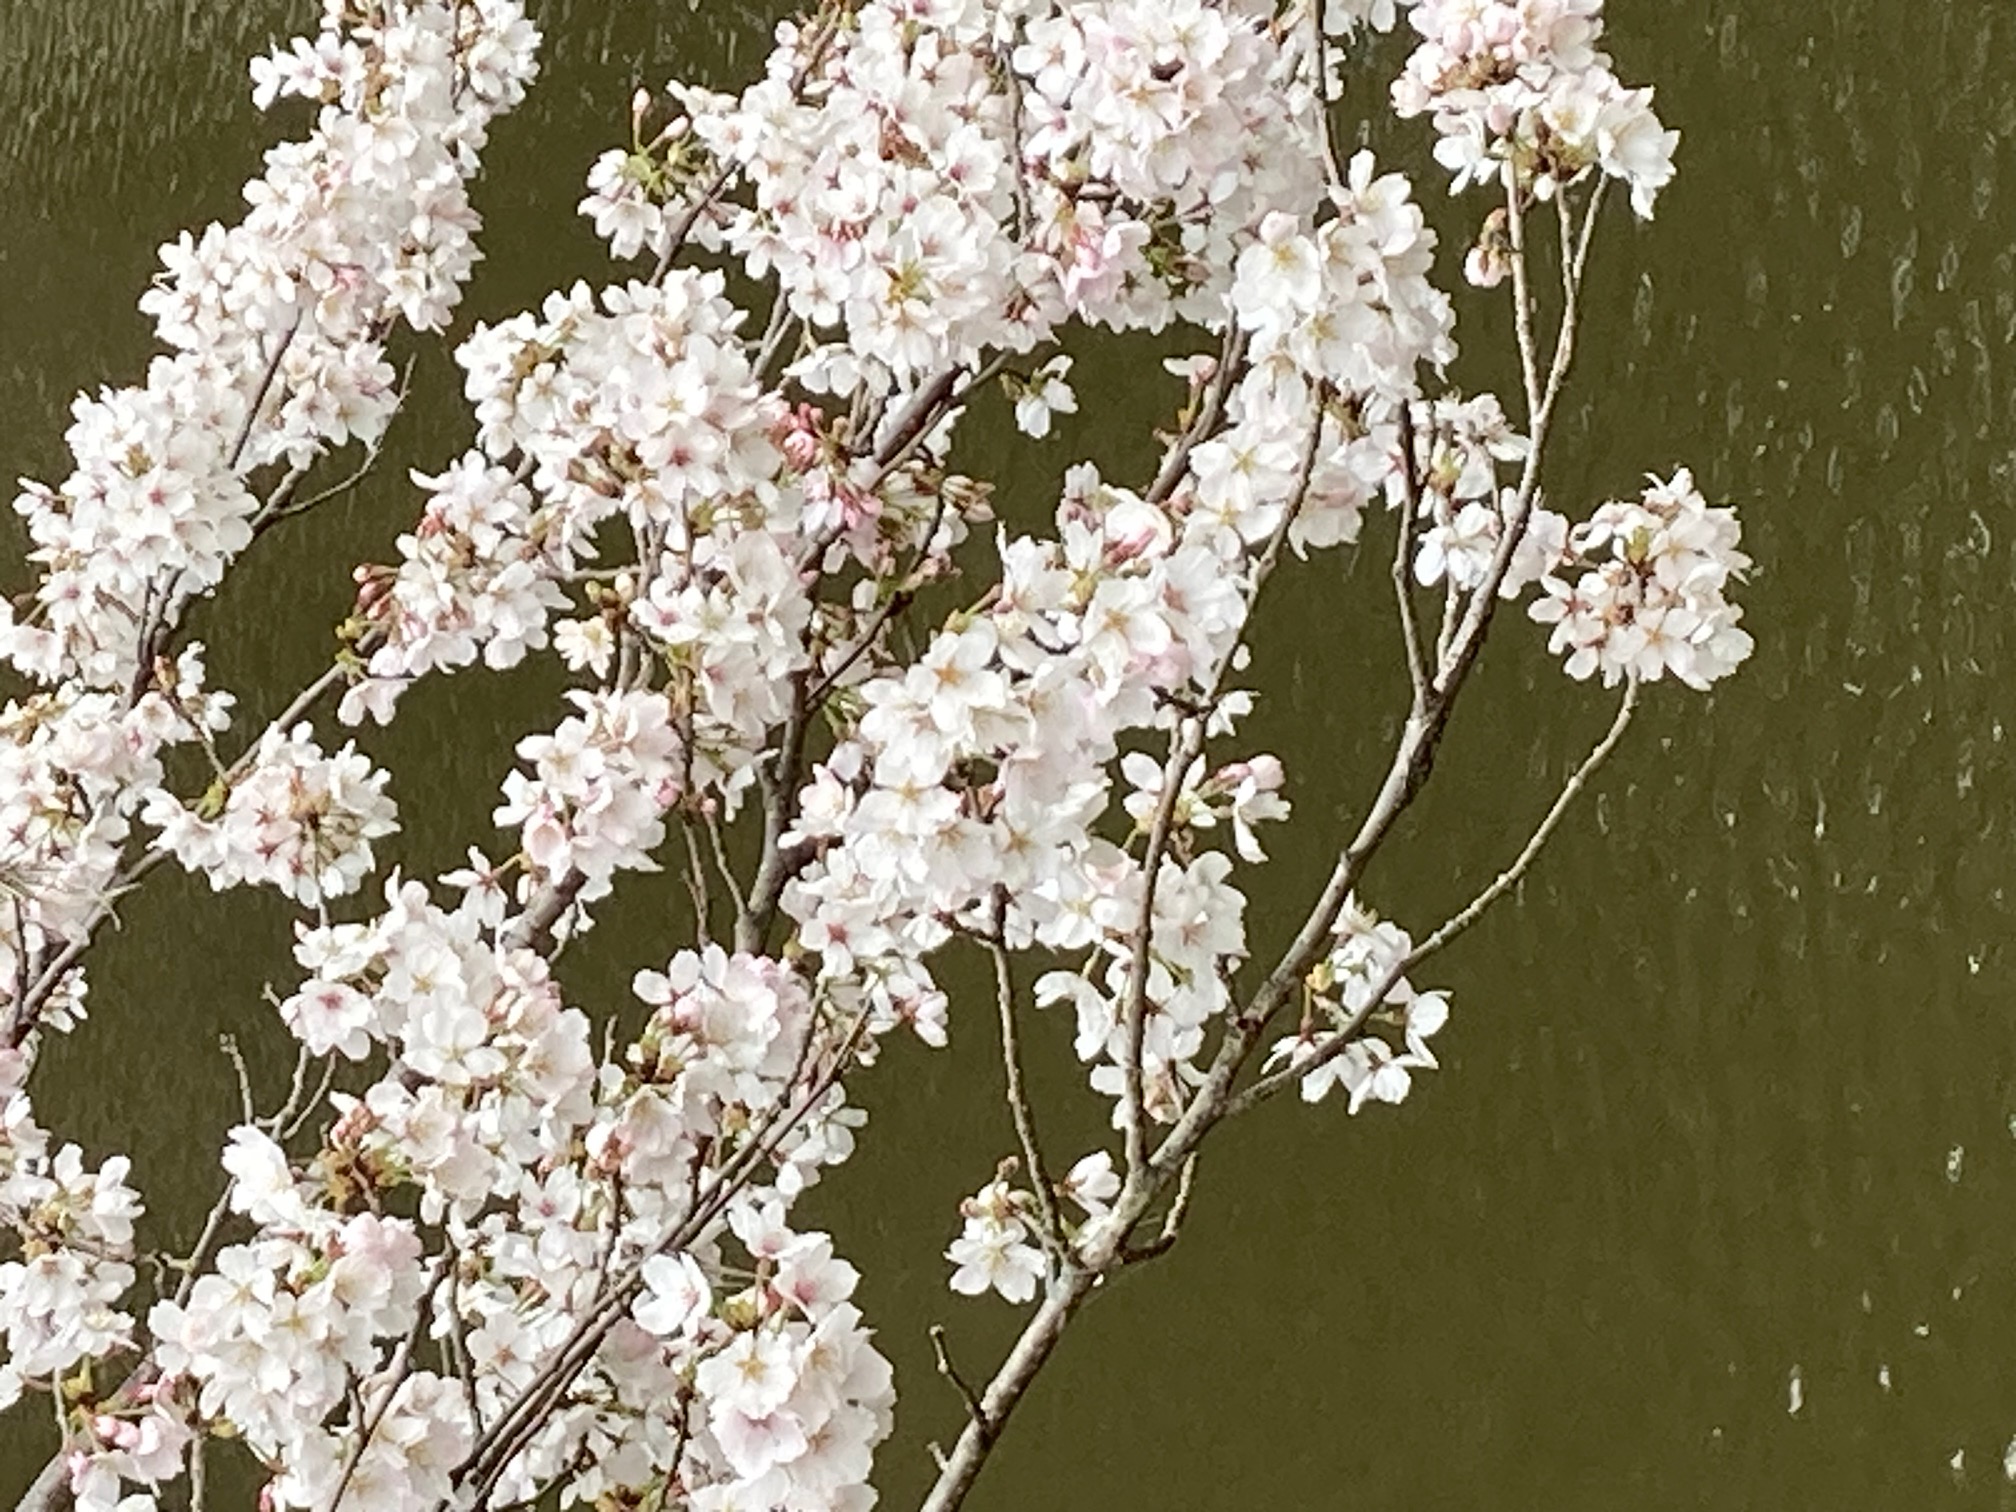 逆川沼公園の桜の枝先